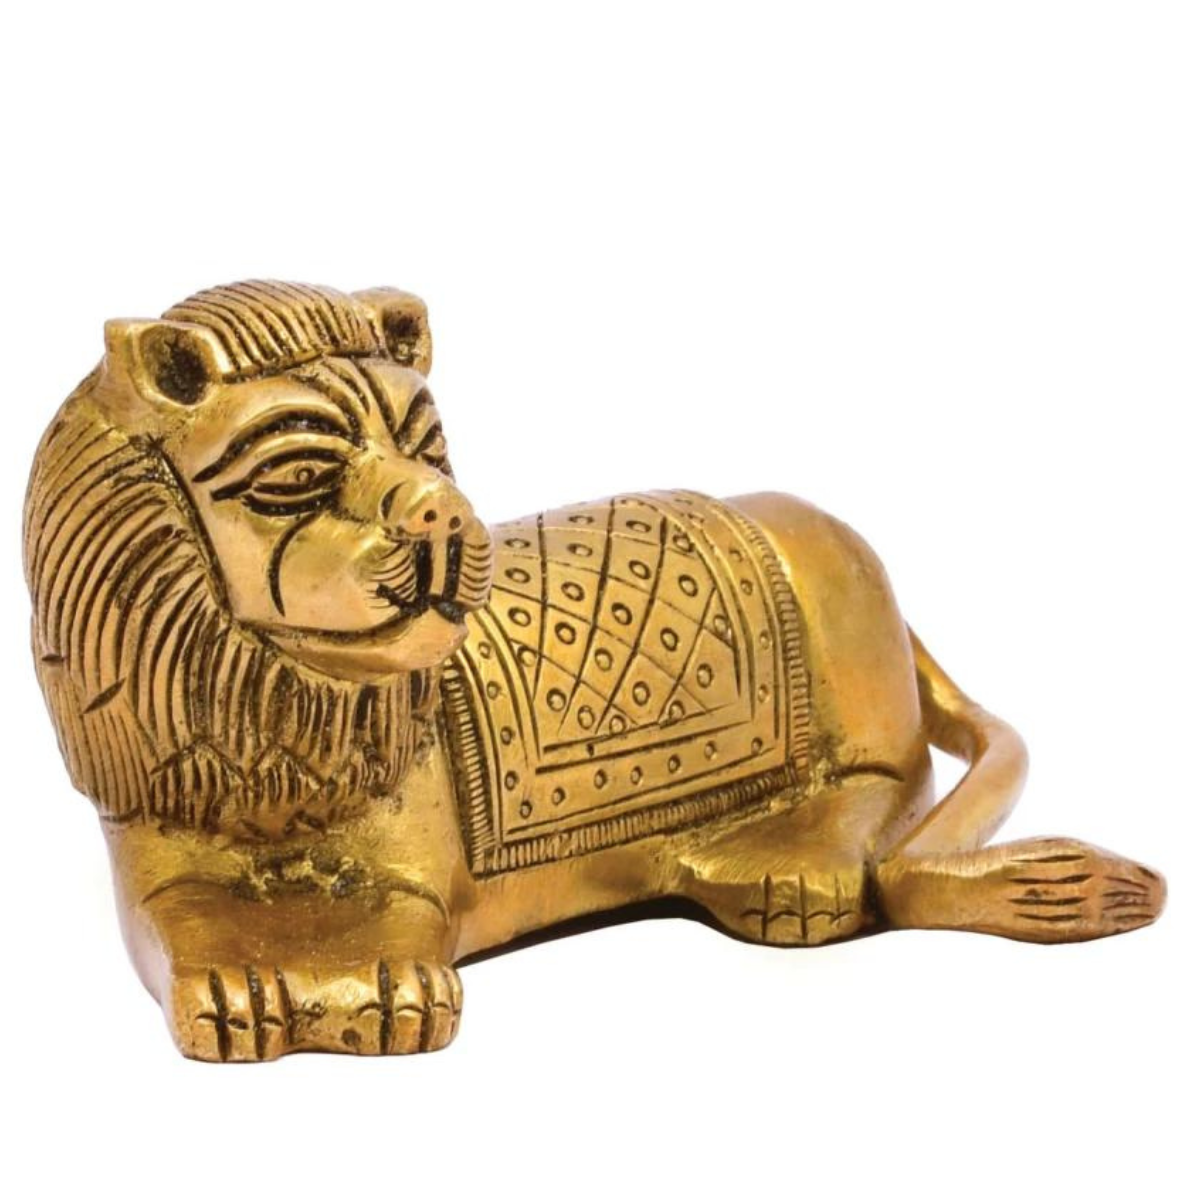 Brass Lion Statue Handmade Lion Sculpture for Home Office Decor Gift